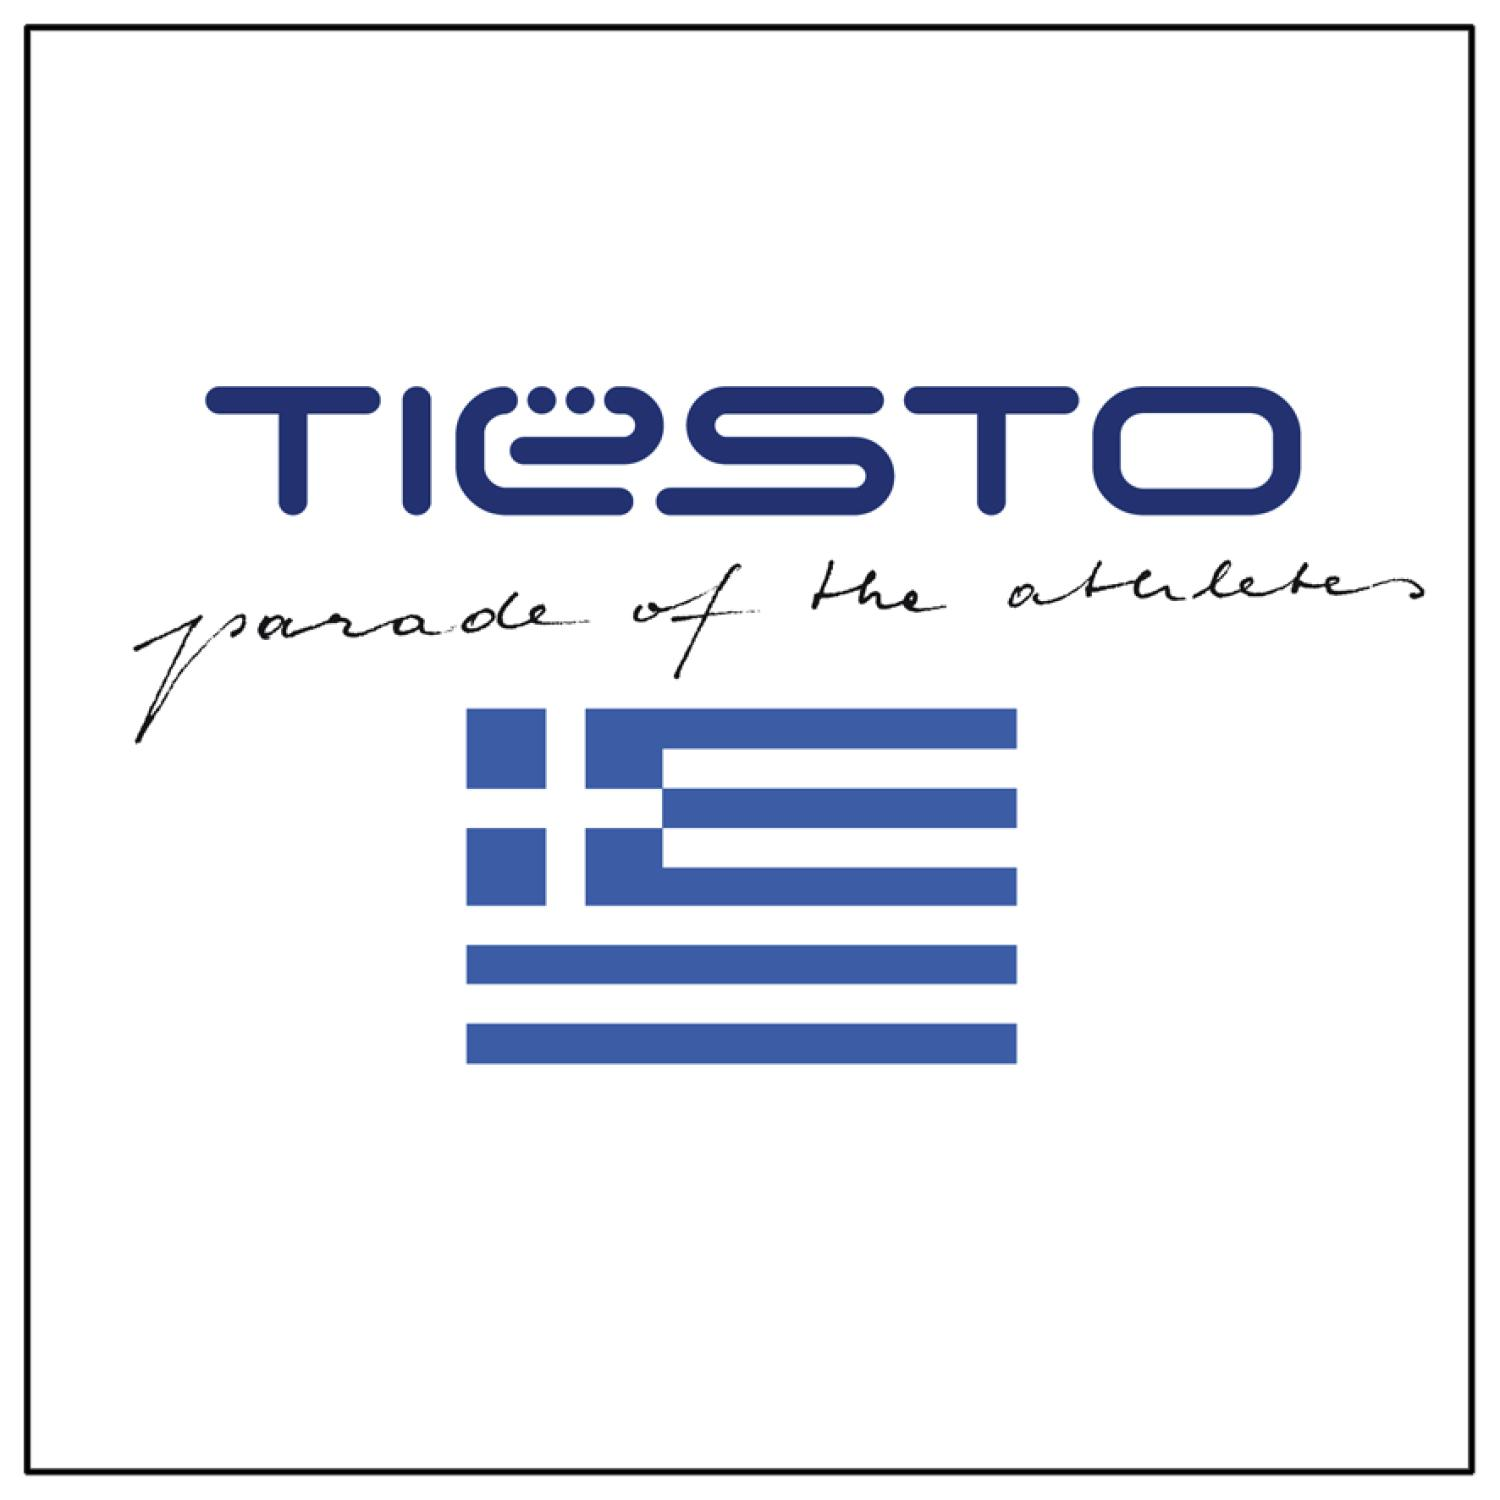 (CD) - Athletes Parade Tiësto - The DJ Of